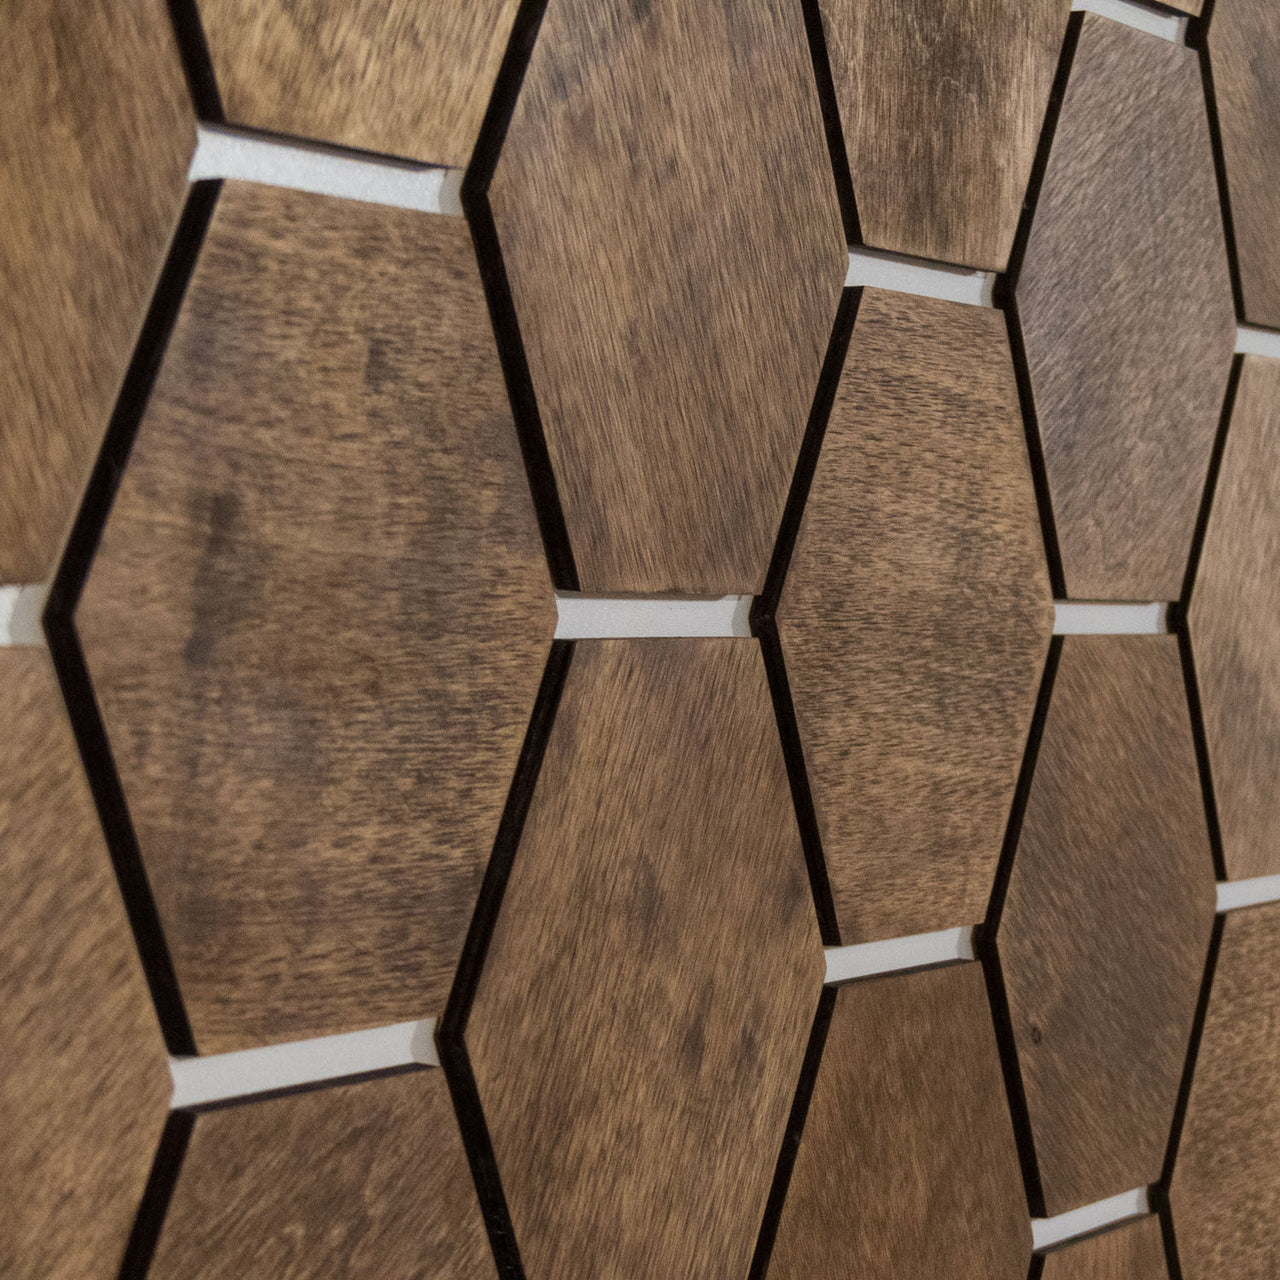 Hexagonal Wooden Wall Panels [32pcs] Birch Medium/Dark